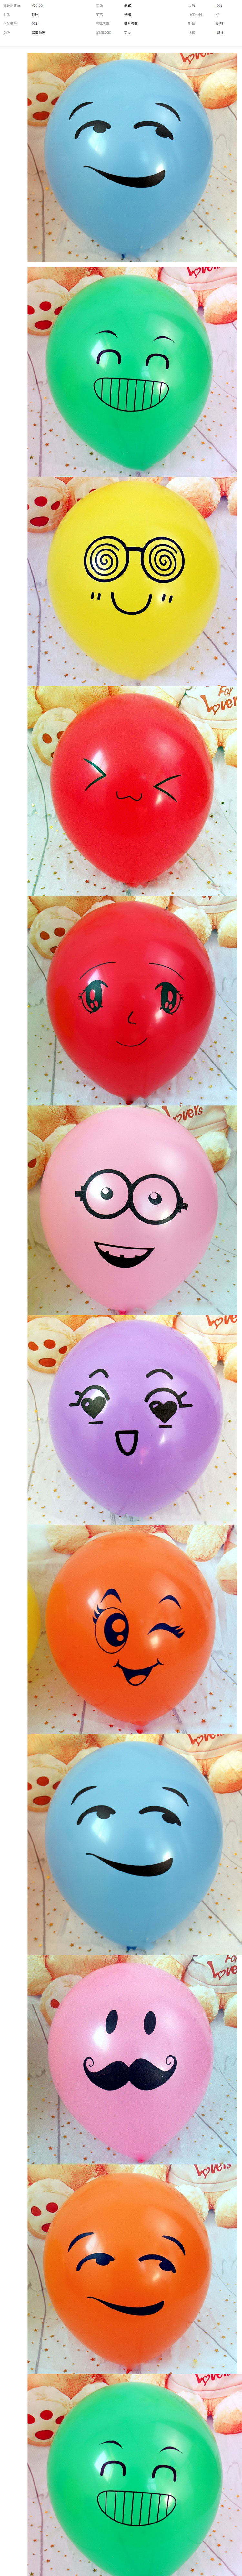 玩具气球_122